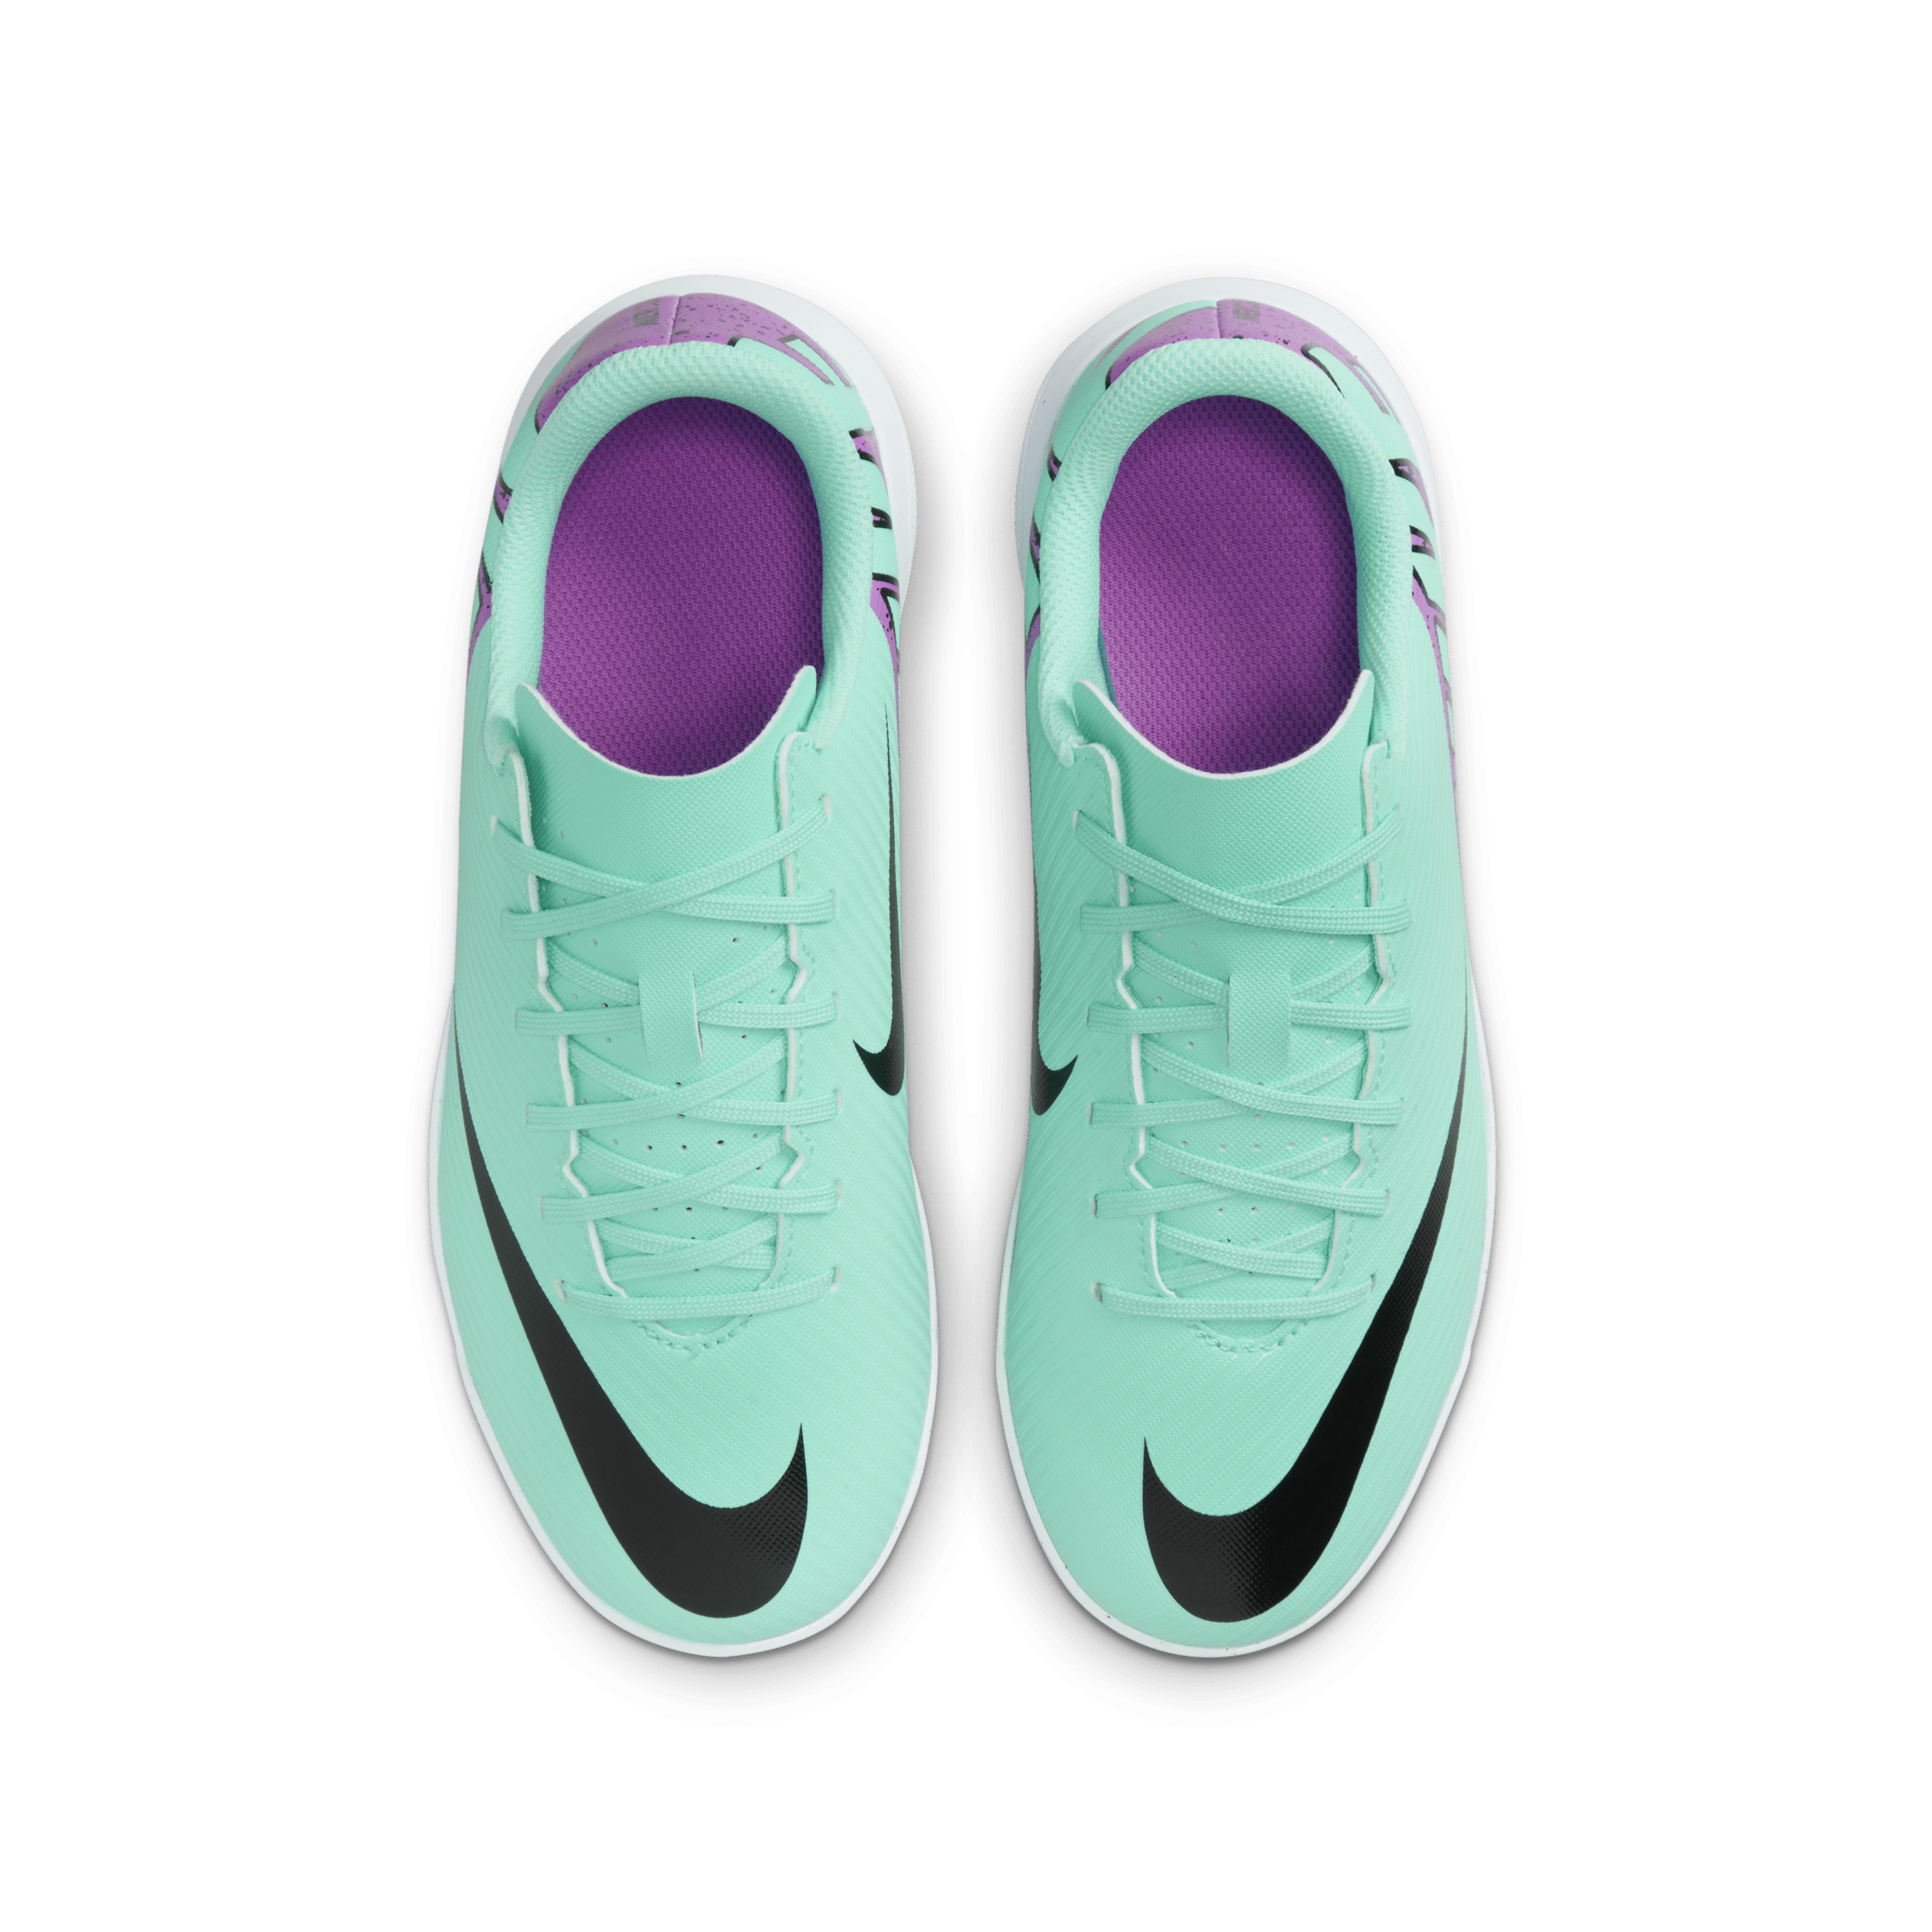 Nike Jr. Mercurial Vapor 15 Club low top voetbalschoenen voor kleuters kids (turf) Groen